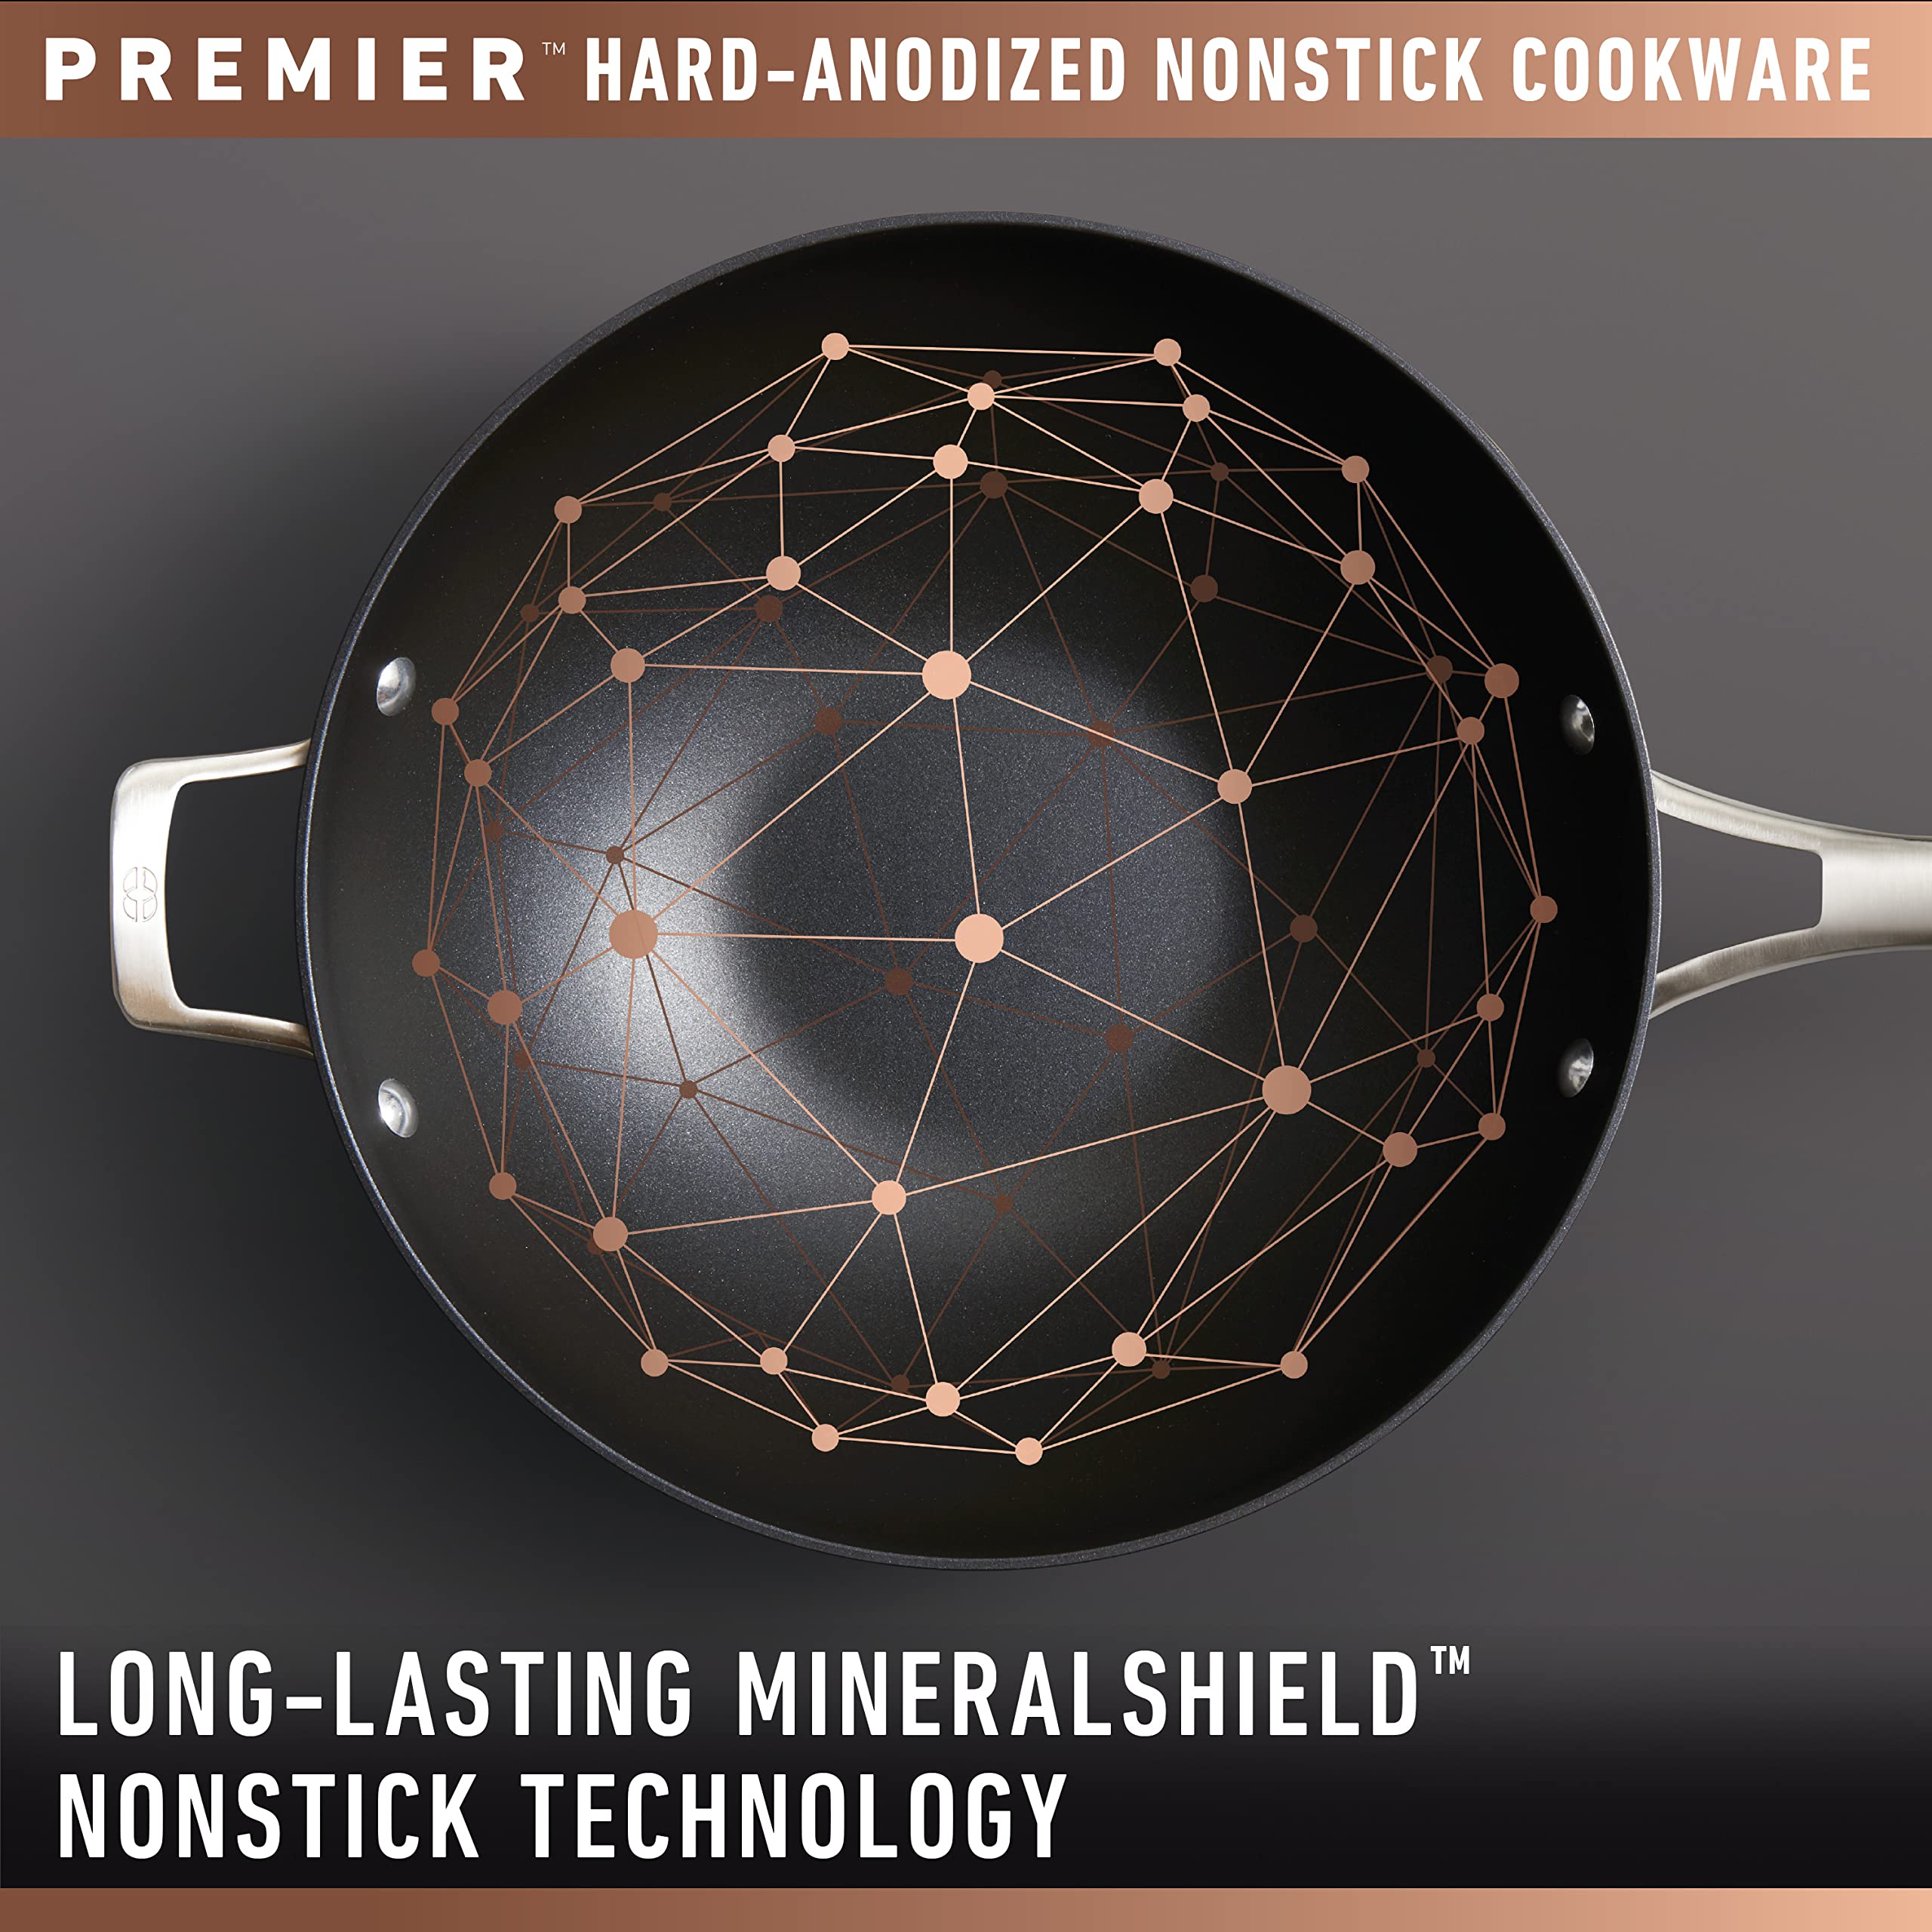 Calphalon Premier Hard-Anodized Nonstick 8.5-Quart Dutch Oven with Lid